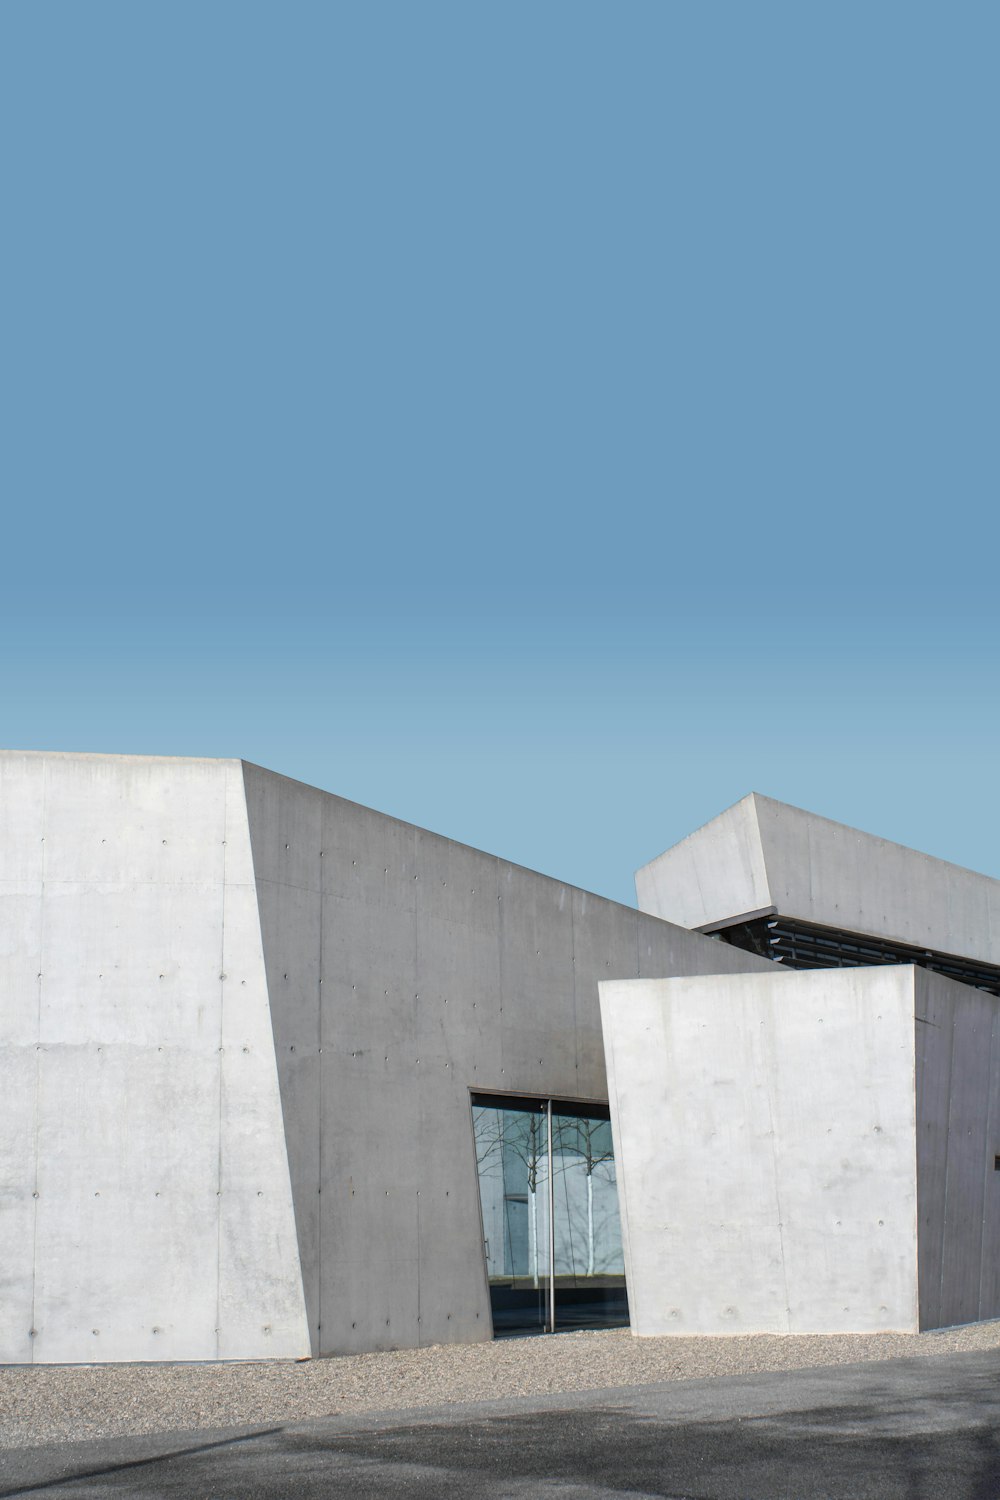 Edifício de concreto branco sob o céu azul durante o dia